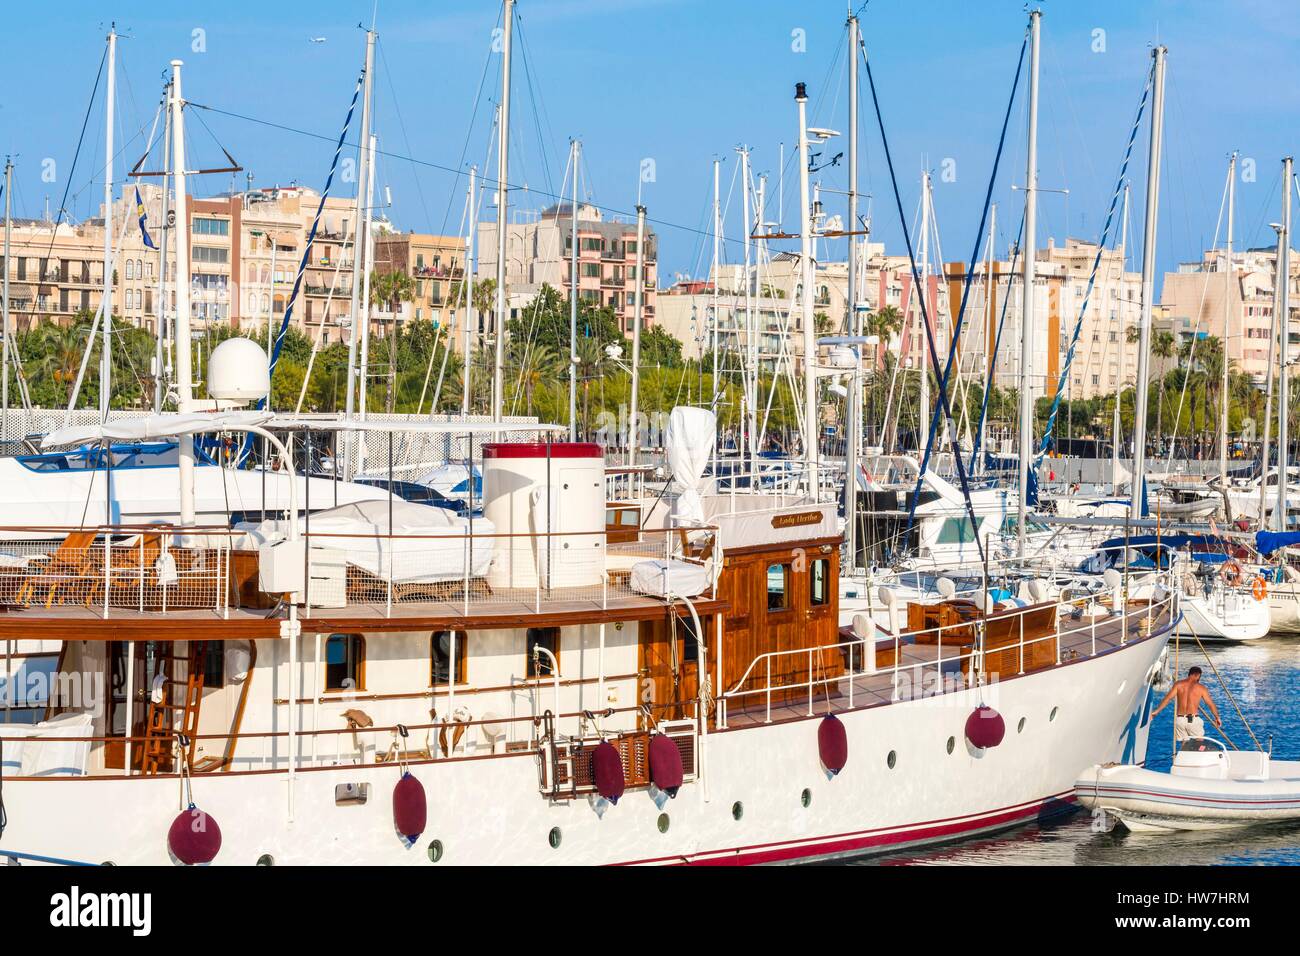 Spain, Catalonia, Barcelona, Port Vell, boats in the marina Stock Photo